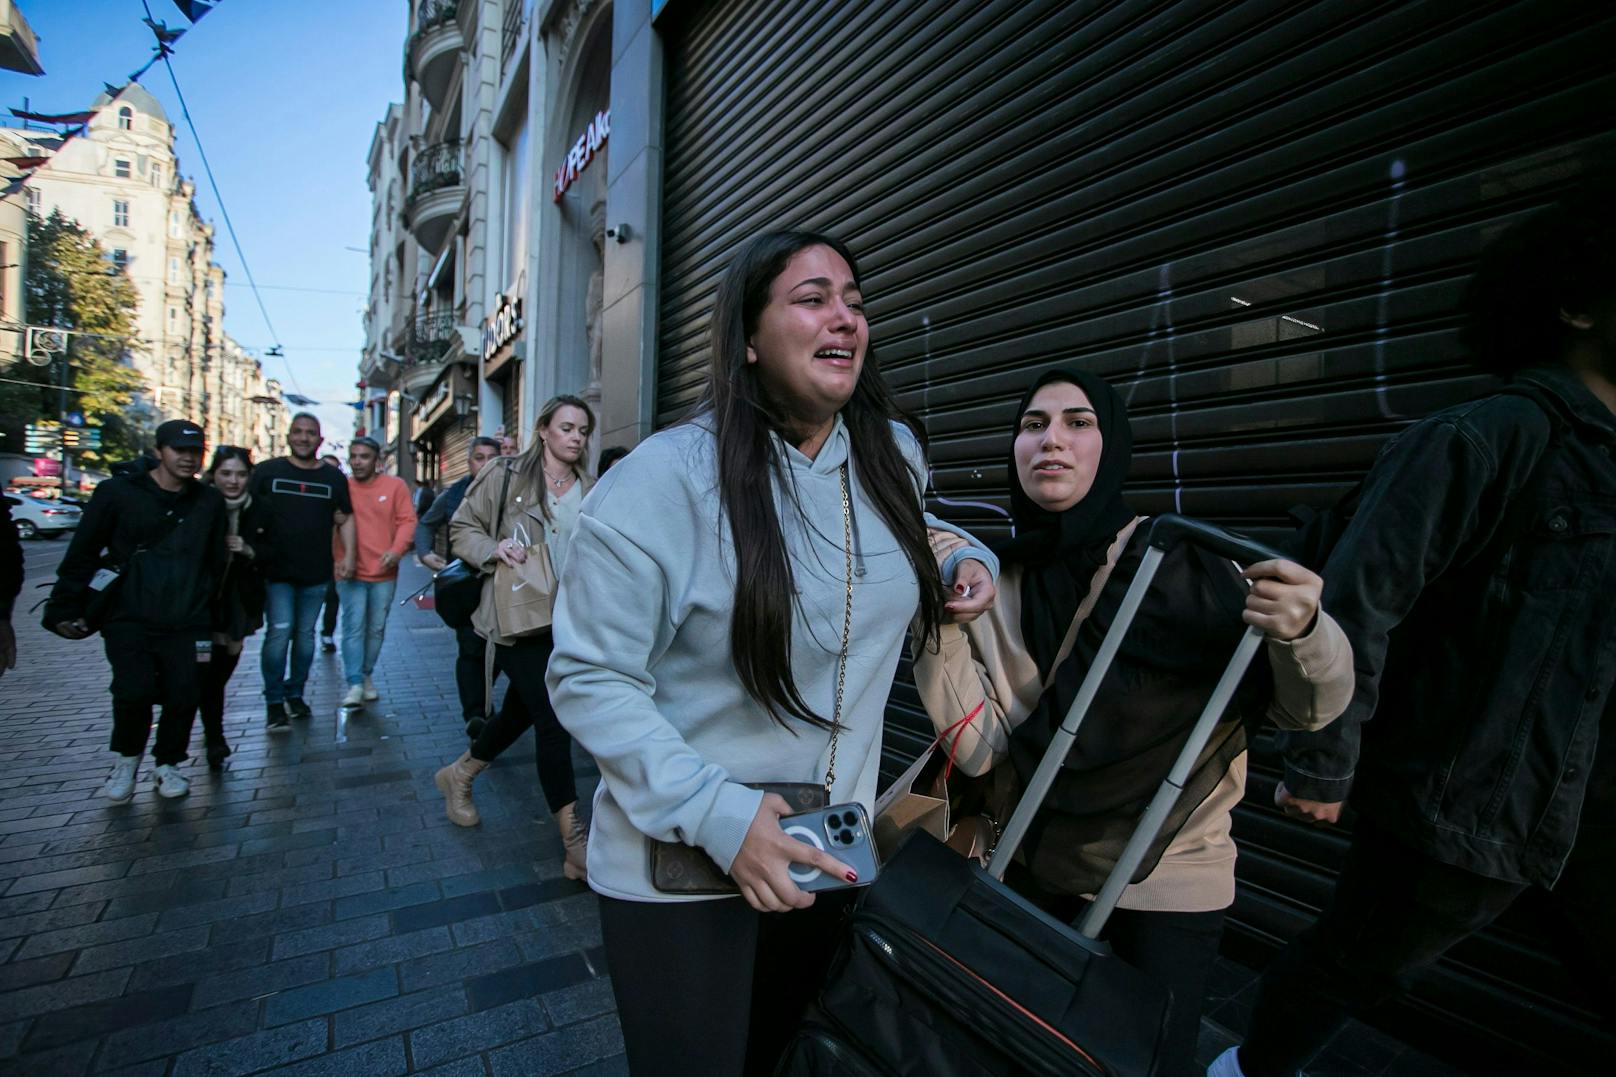 Nach Istanbul-Anschlag – jetzt gesteht Verdächtige